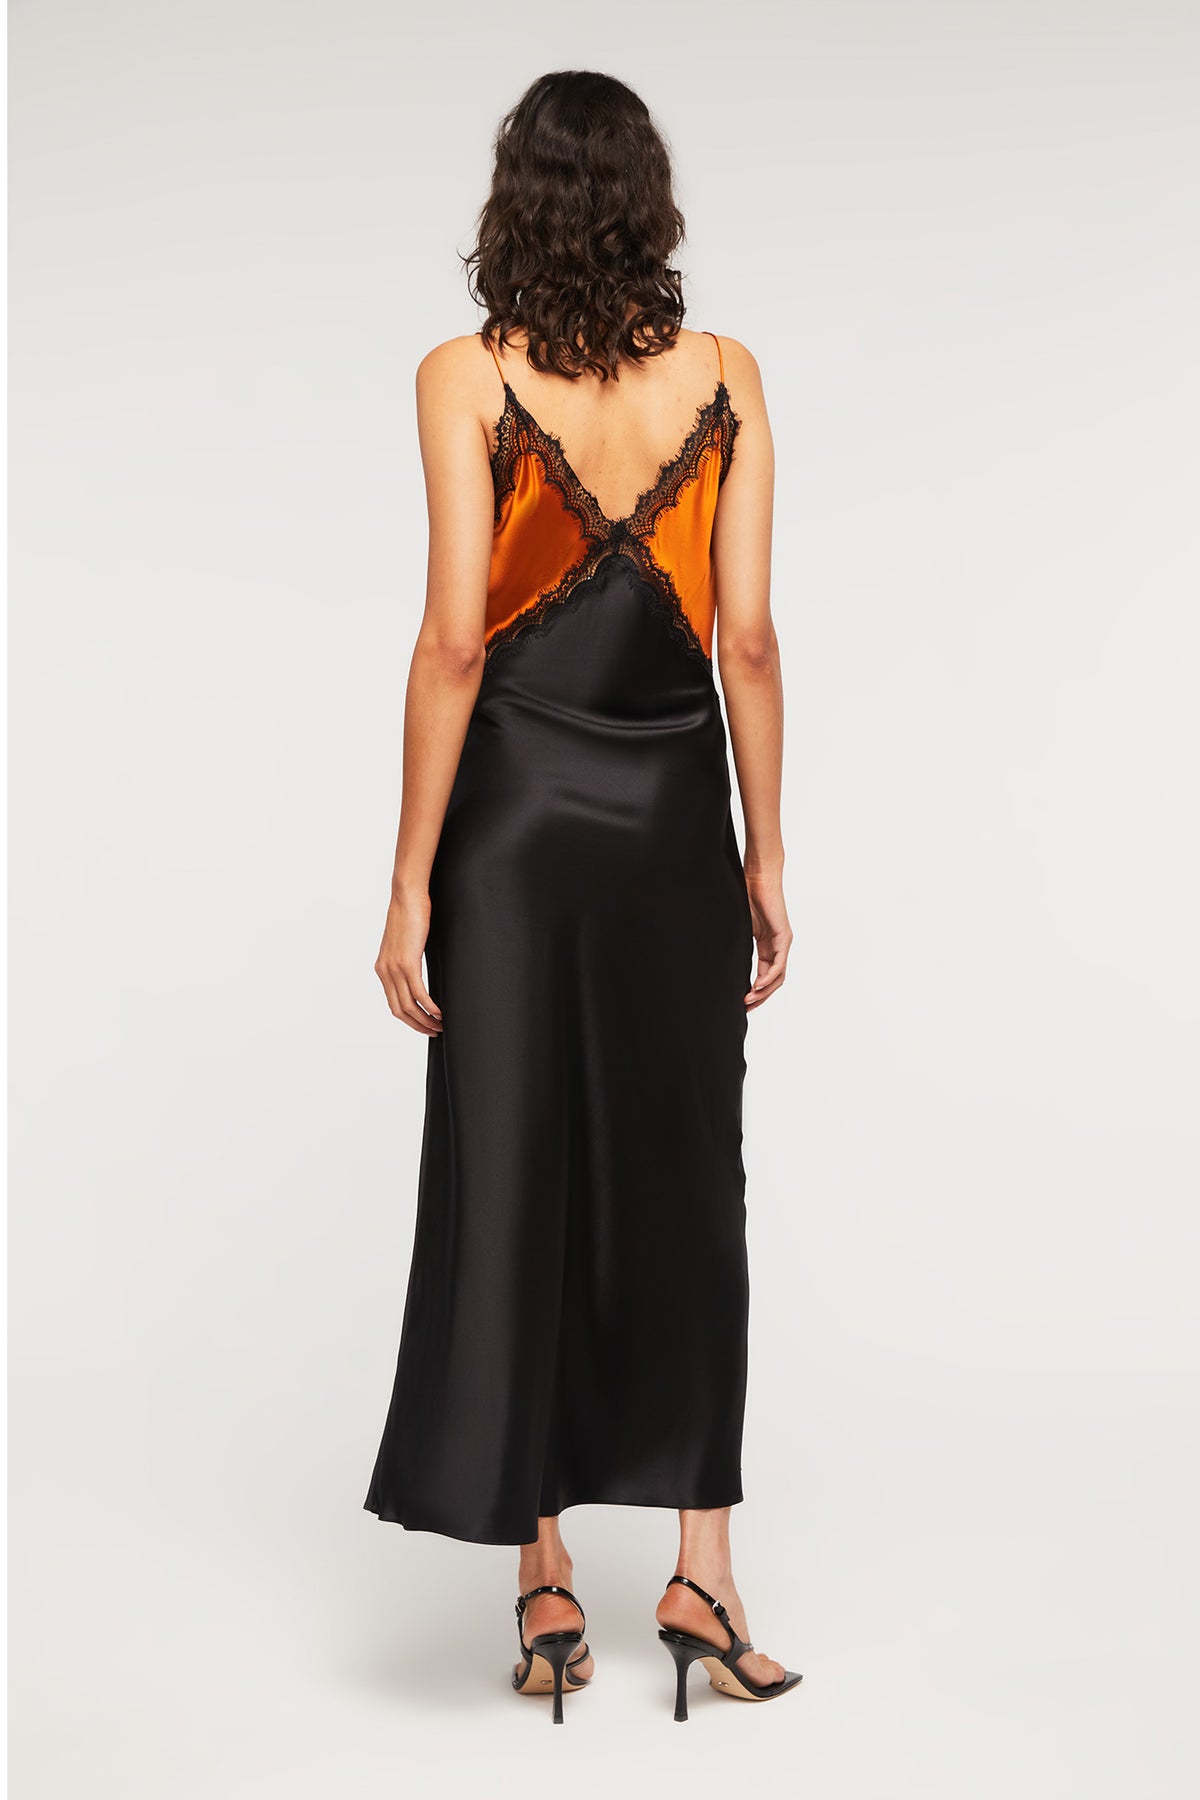 Sadie Dress in Sunset/Black - 100% Silk | GINIA